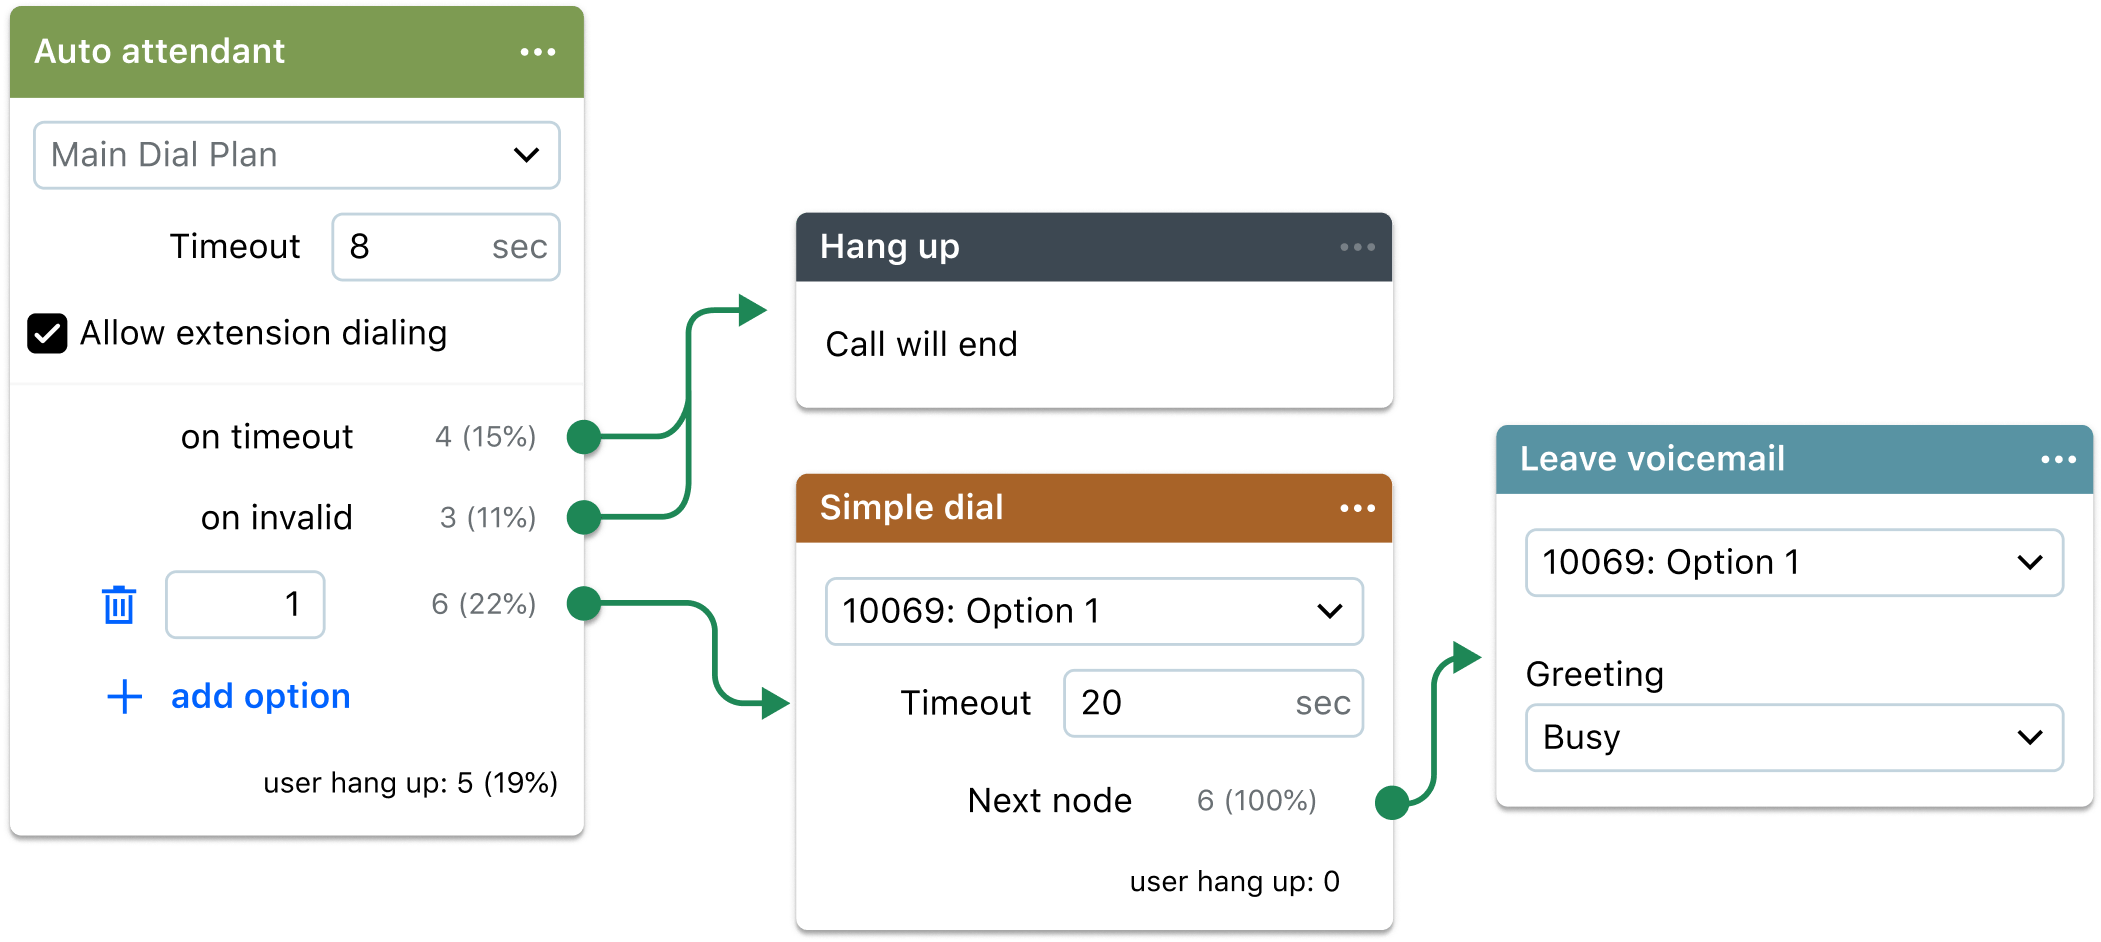 Eine Collage zeigt die Anrufplan-Optionen, die die automatische Telefonzentrale von GoTo Connect bietet.